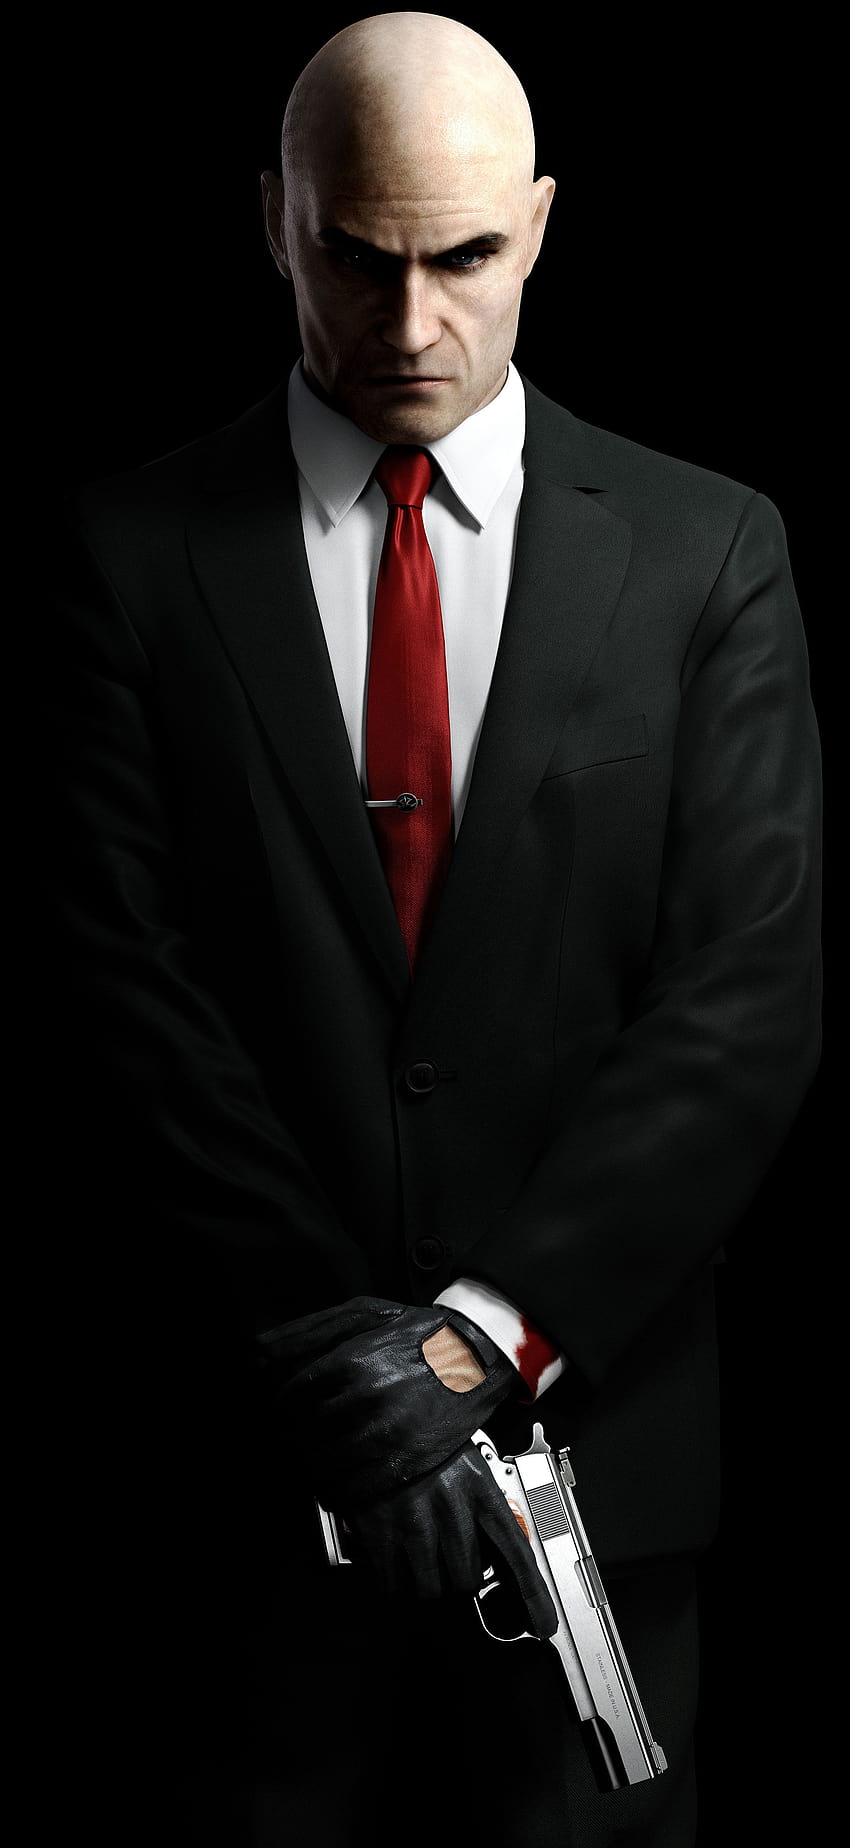 Black Suit Red Tie, suit and tie 모빌 HD 전화 배경 화면